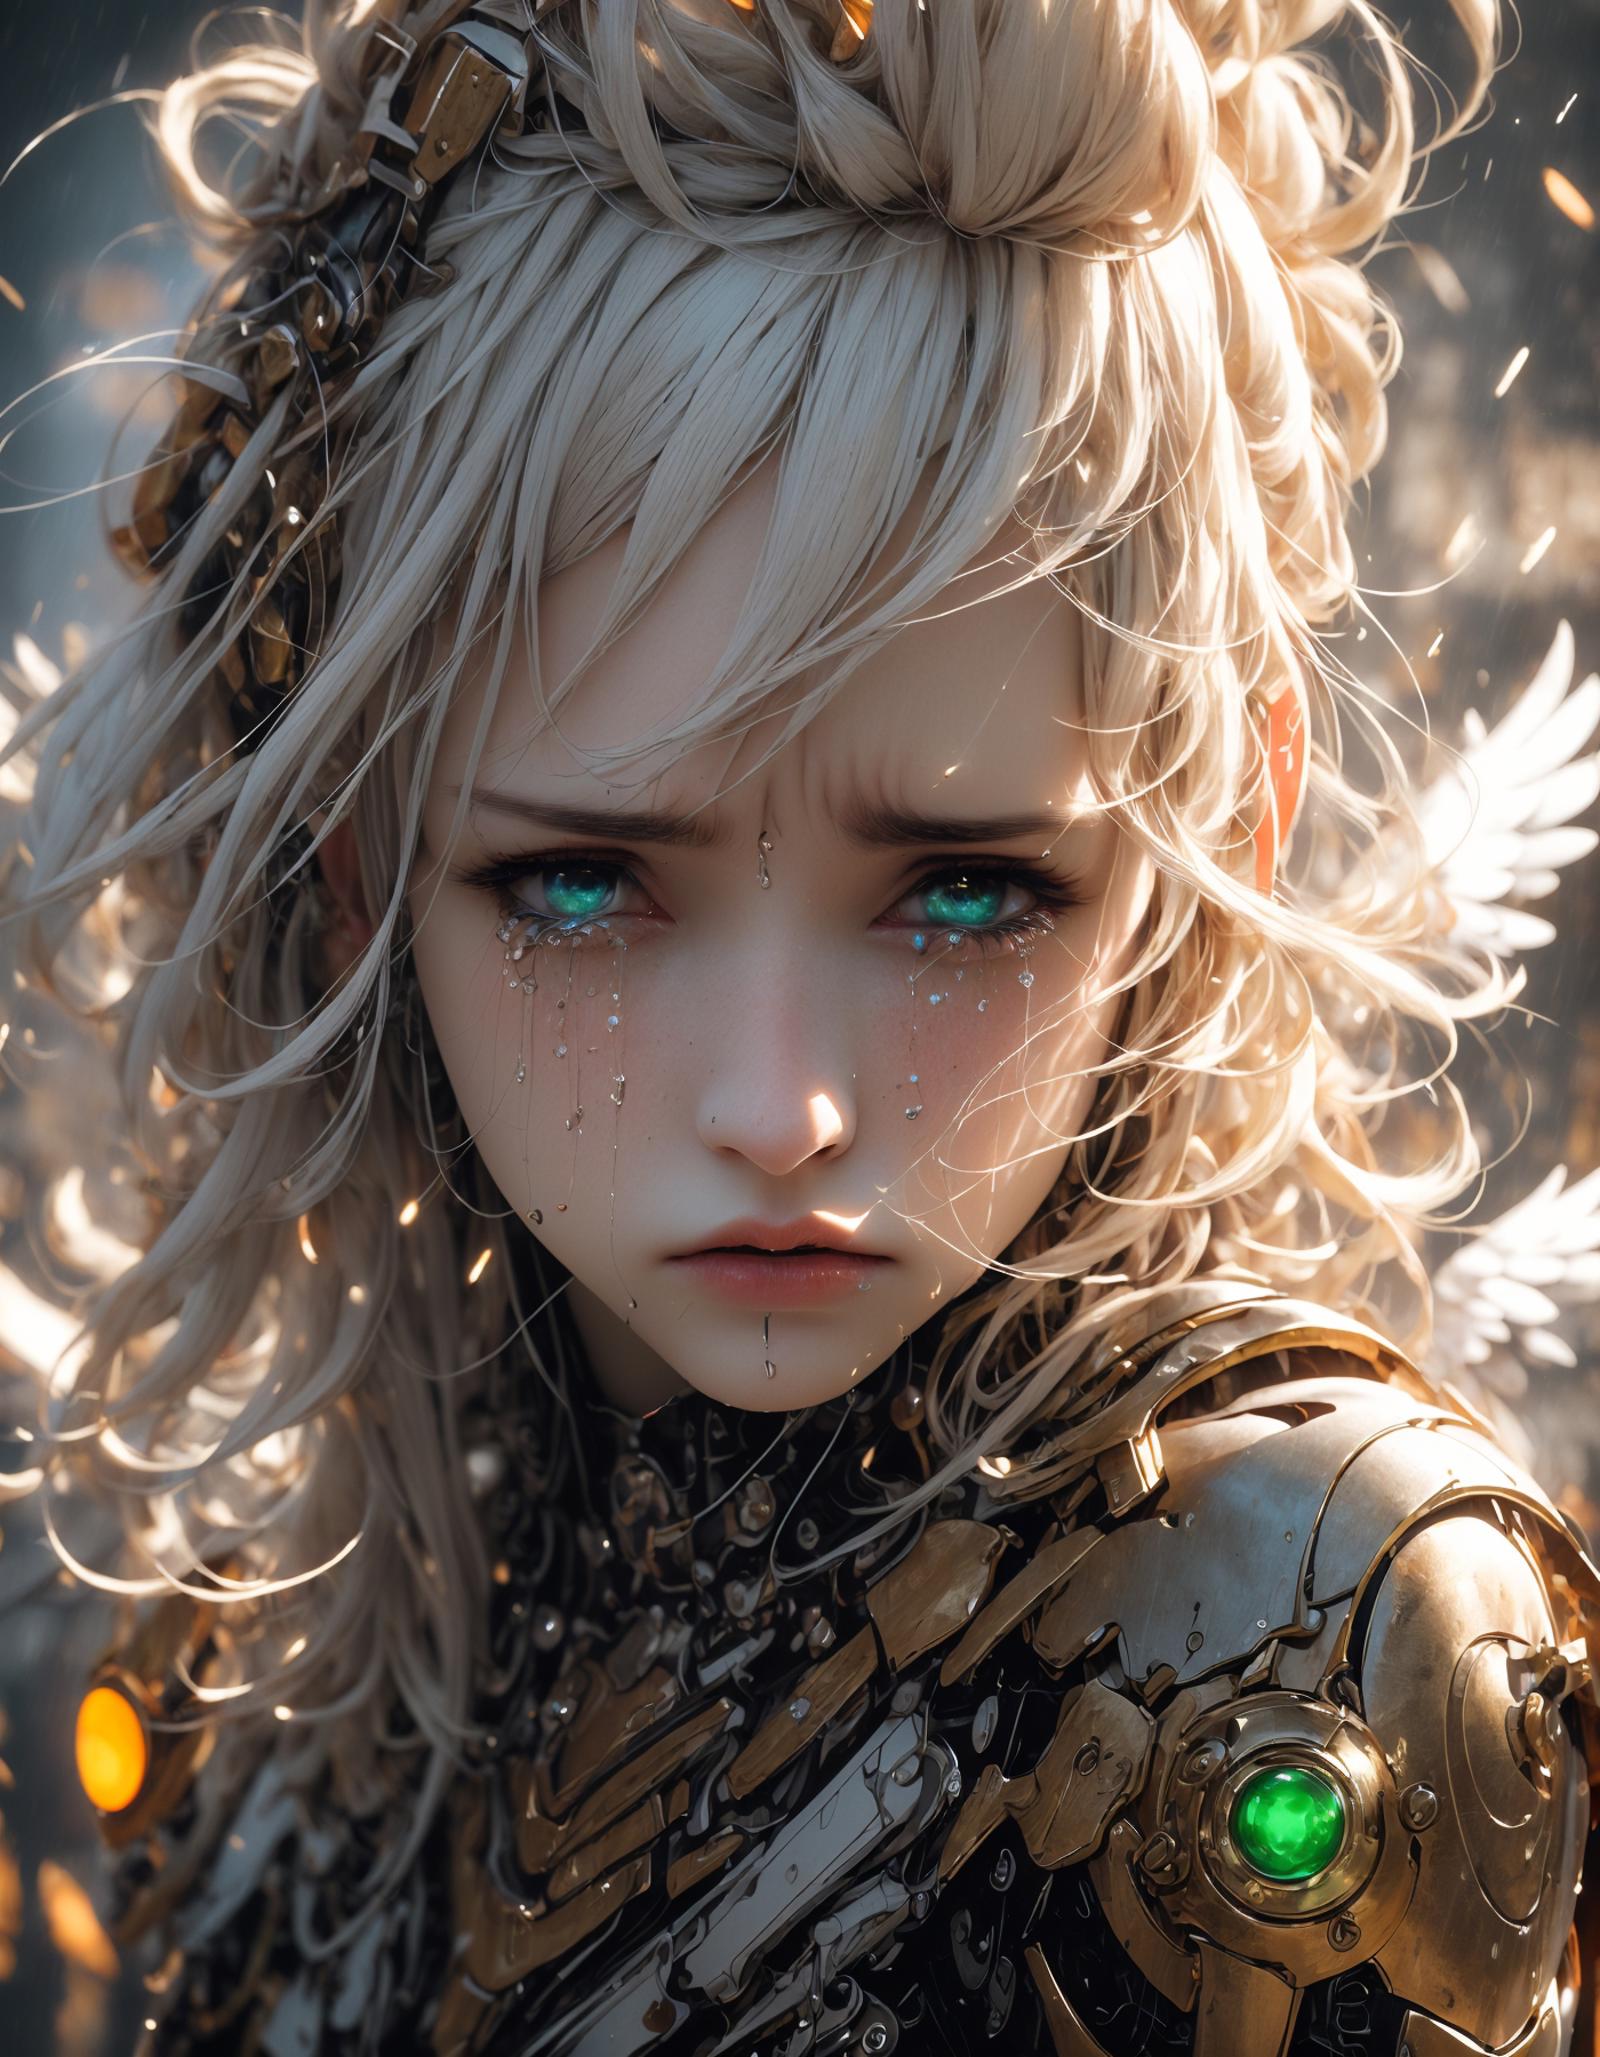 绪儿-哭泣天使【脸模】Crying Angel [face model] image by XRYCJ